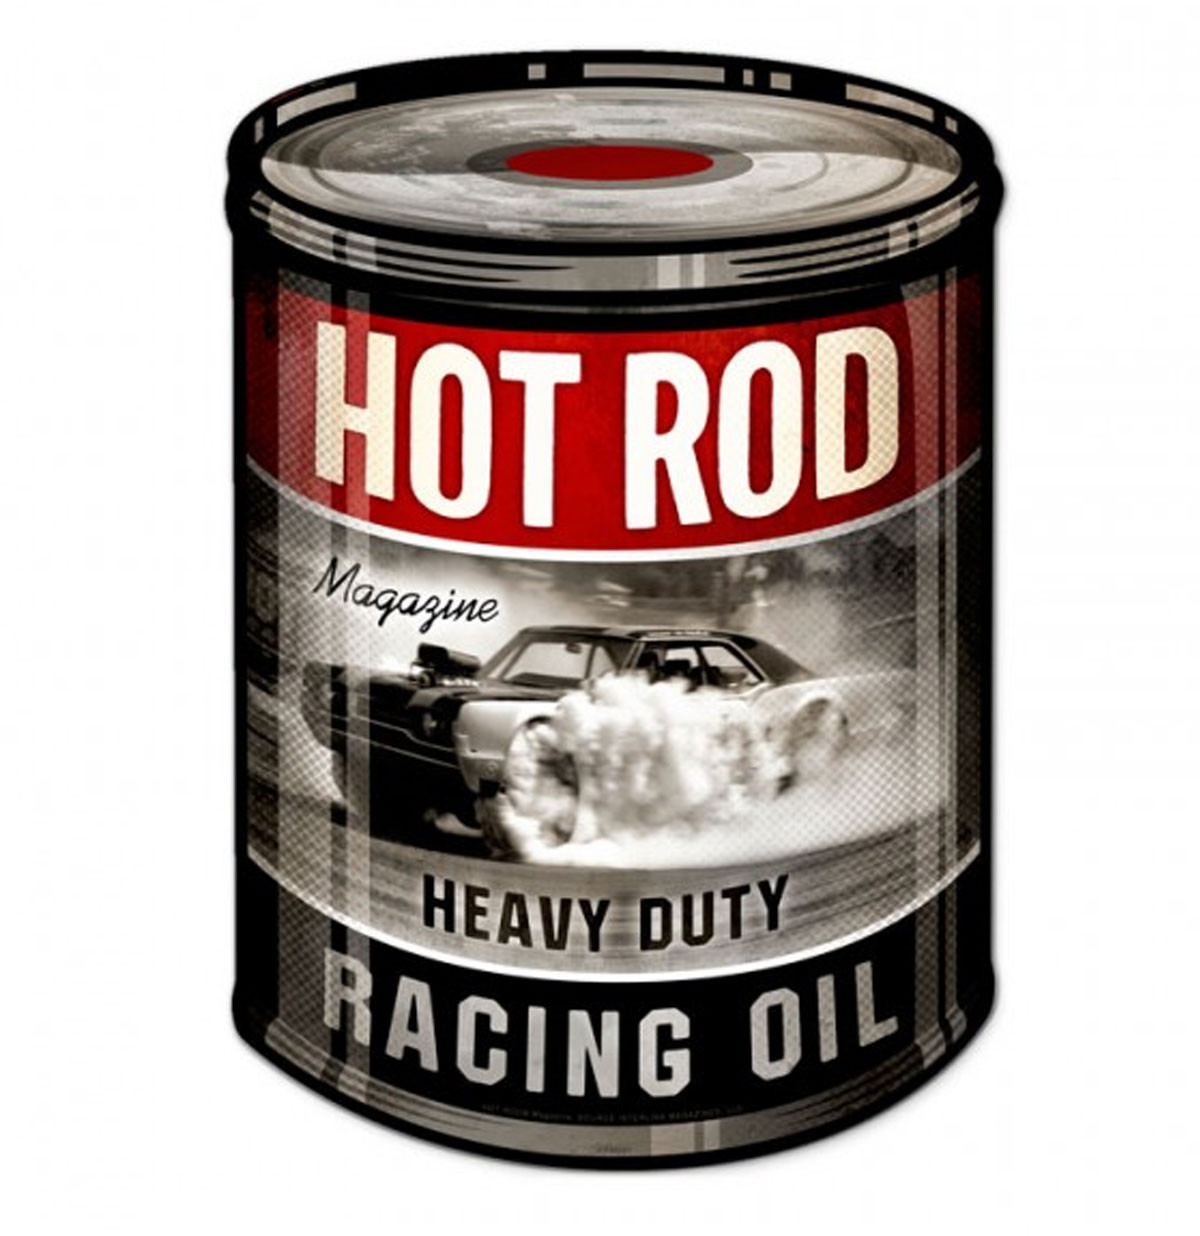 Hot Rod Heavy Duty Racing Oil Zwaar Metalen Bord